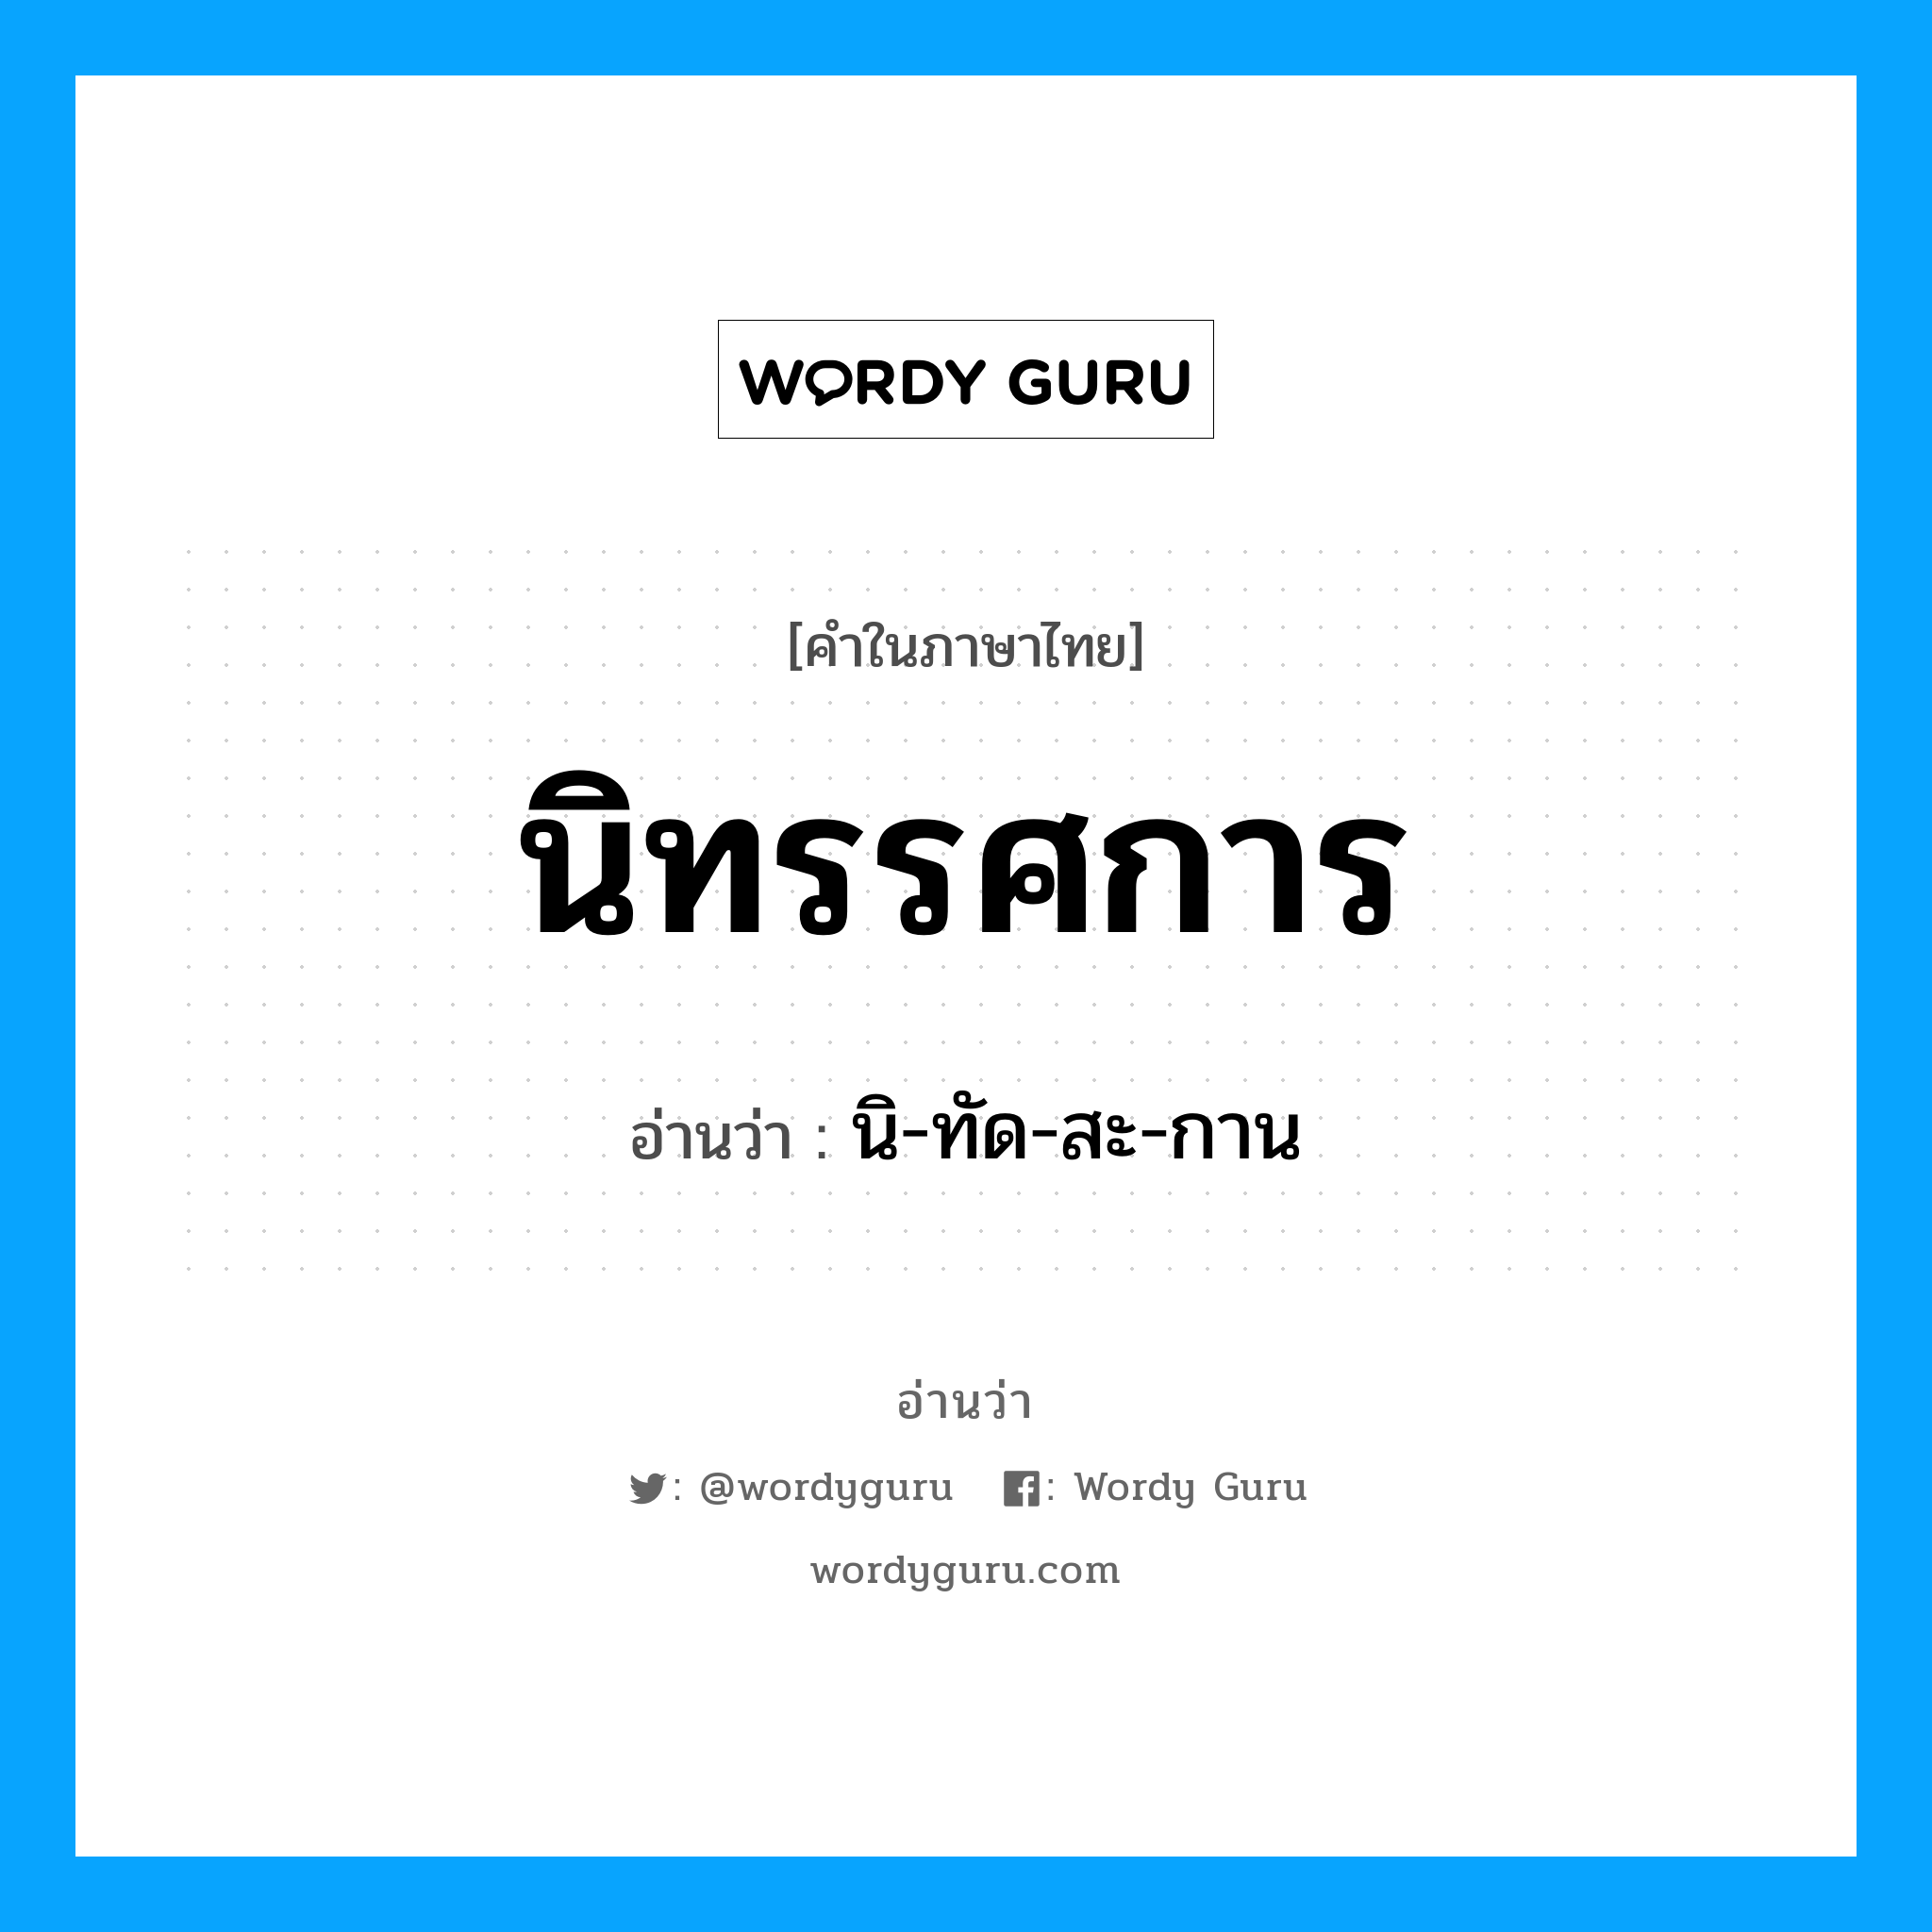 นิ-ทัด-สะ-กาน เป็นคำอ่านของคำไหน?, คำในภาษาไทย นิ-ทัด-สะ-กาน อ่านว่า นิทรรศการ